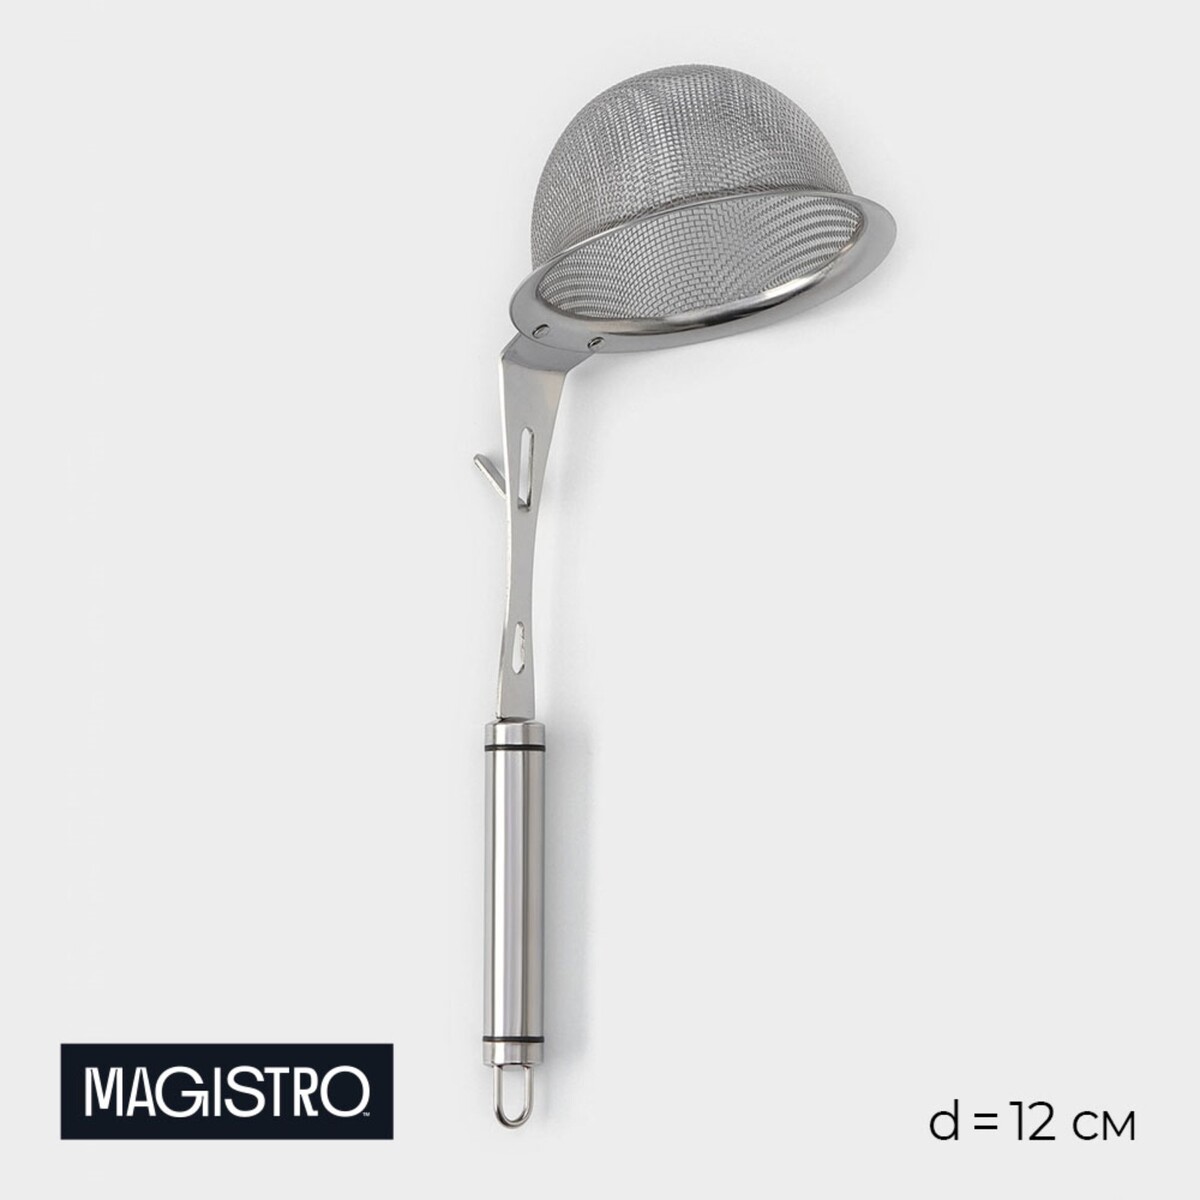 Сито - дуршлаг magistro arti, d=12 см, с фиксатором